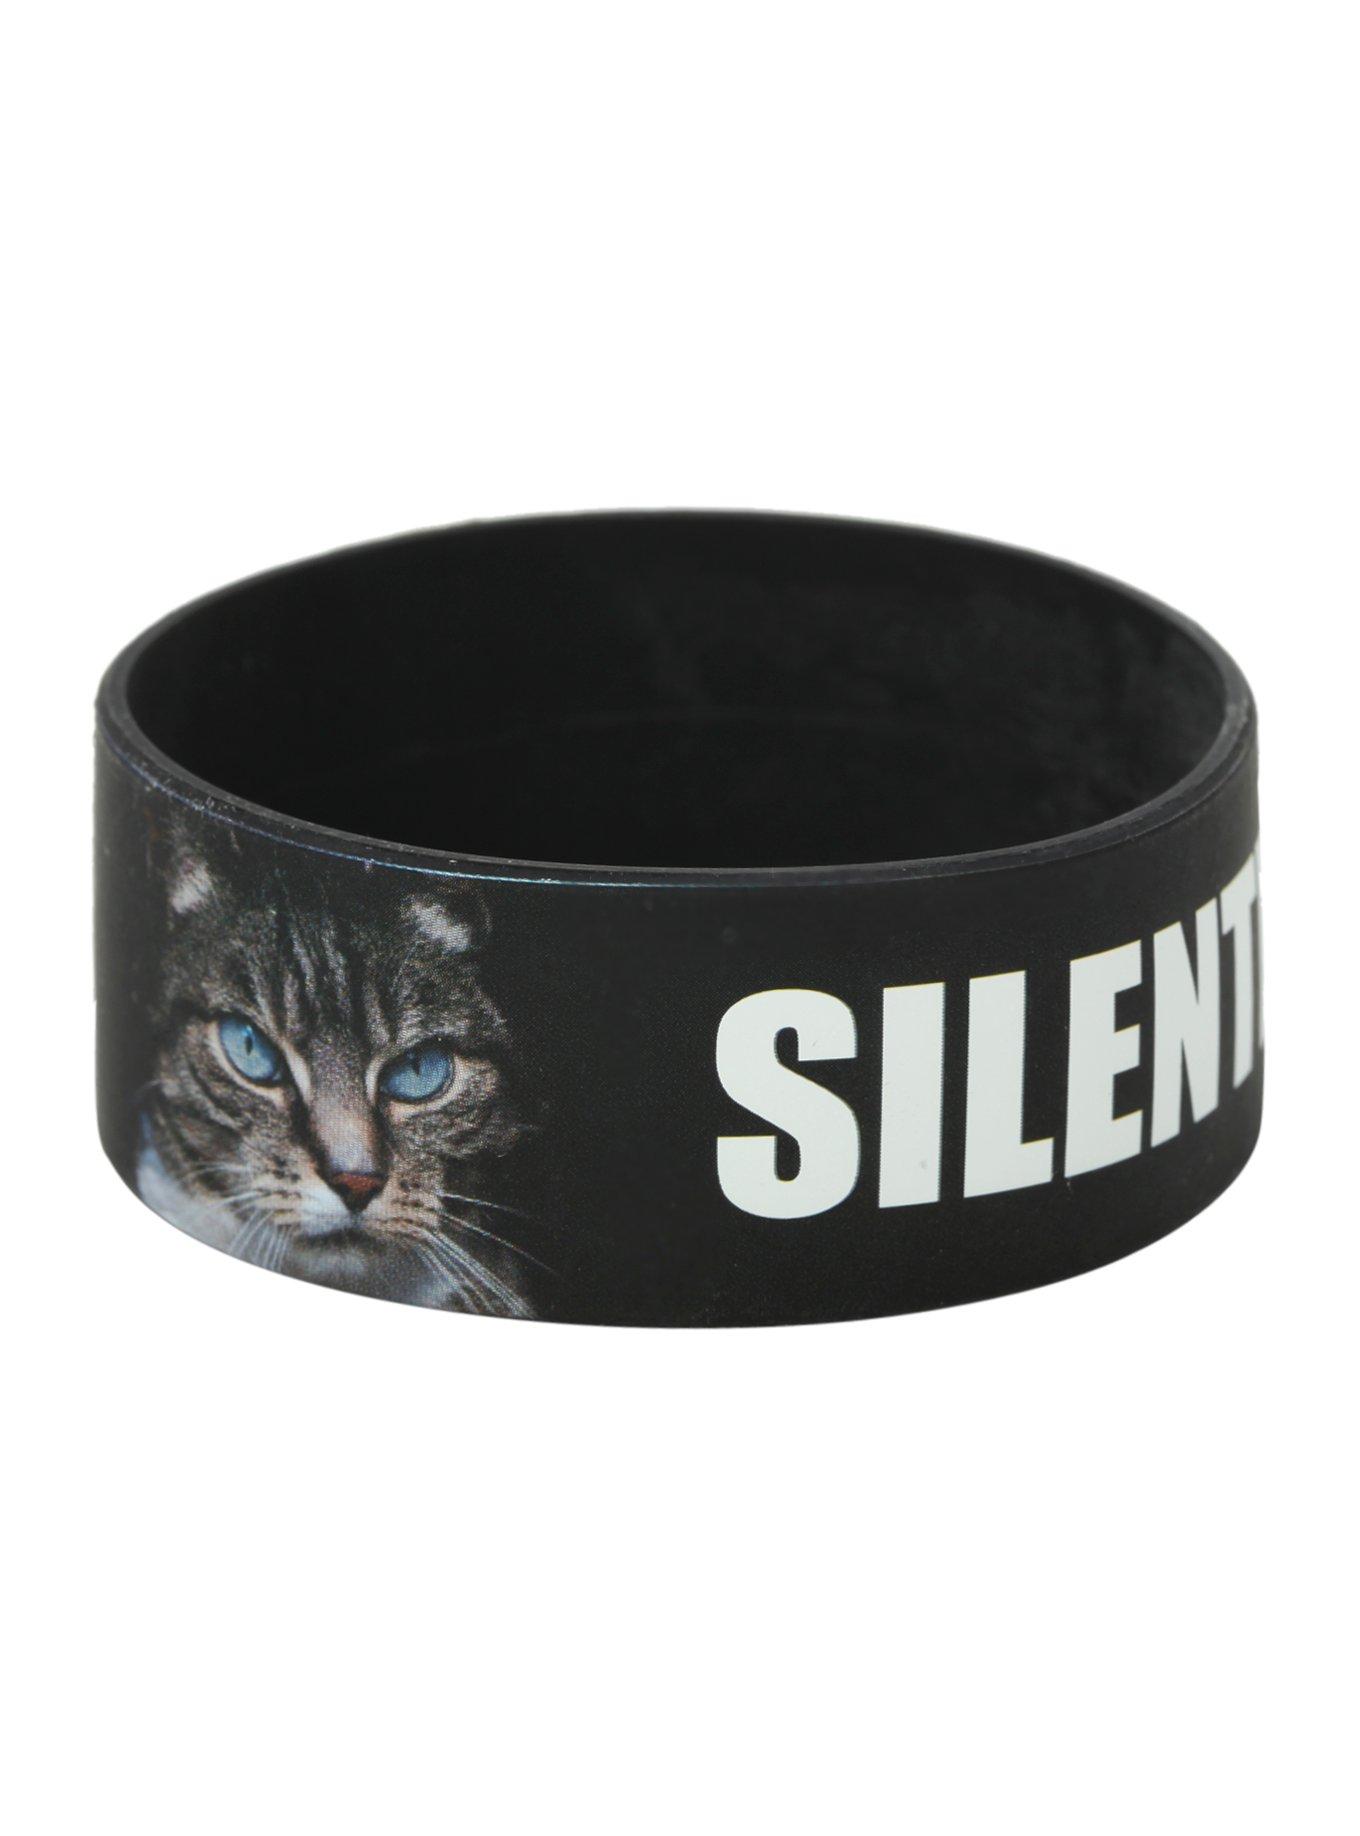 Silently Judging You Cat Rubber Bracelet, , hi-res